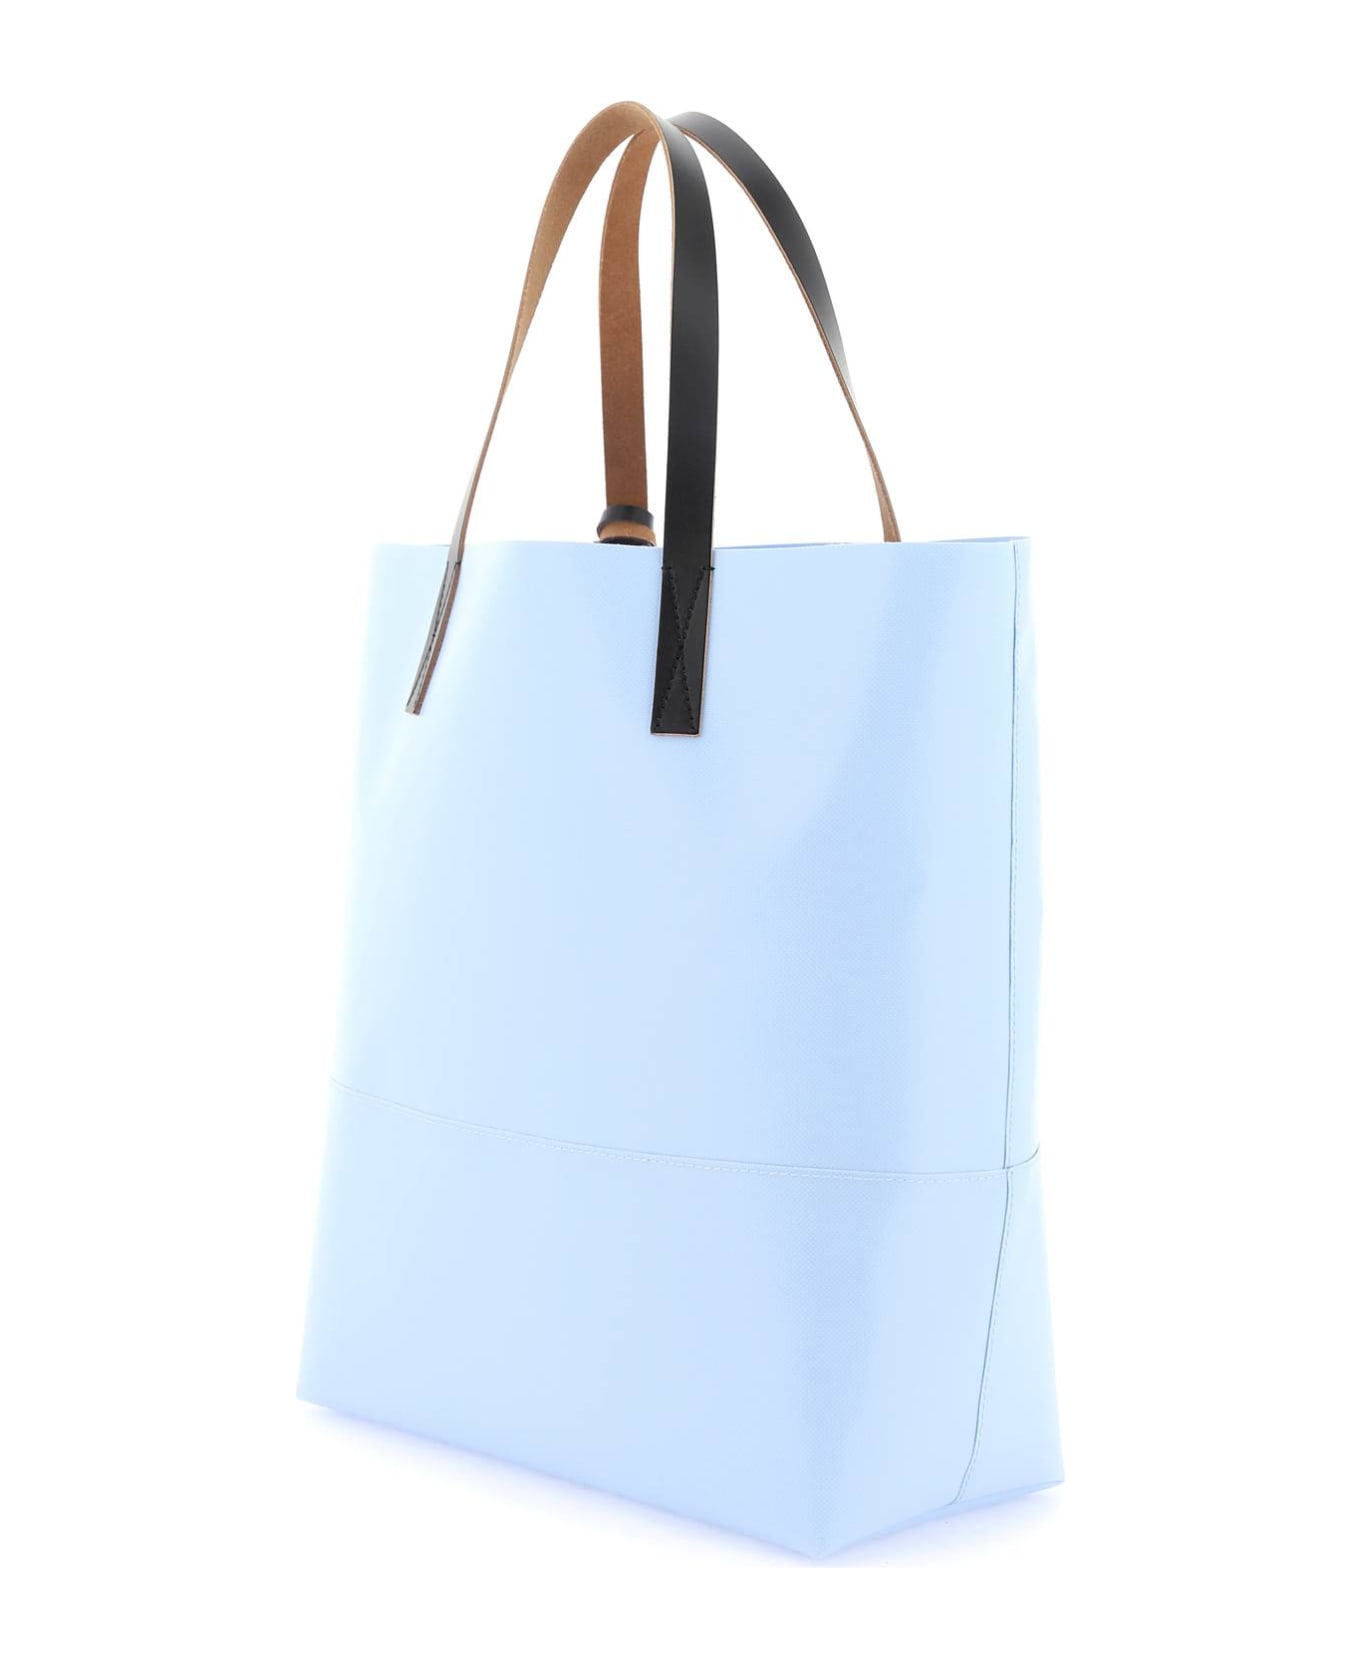 Marni Shoulder Bag - Light Blue